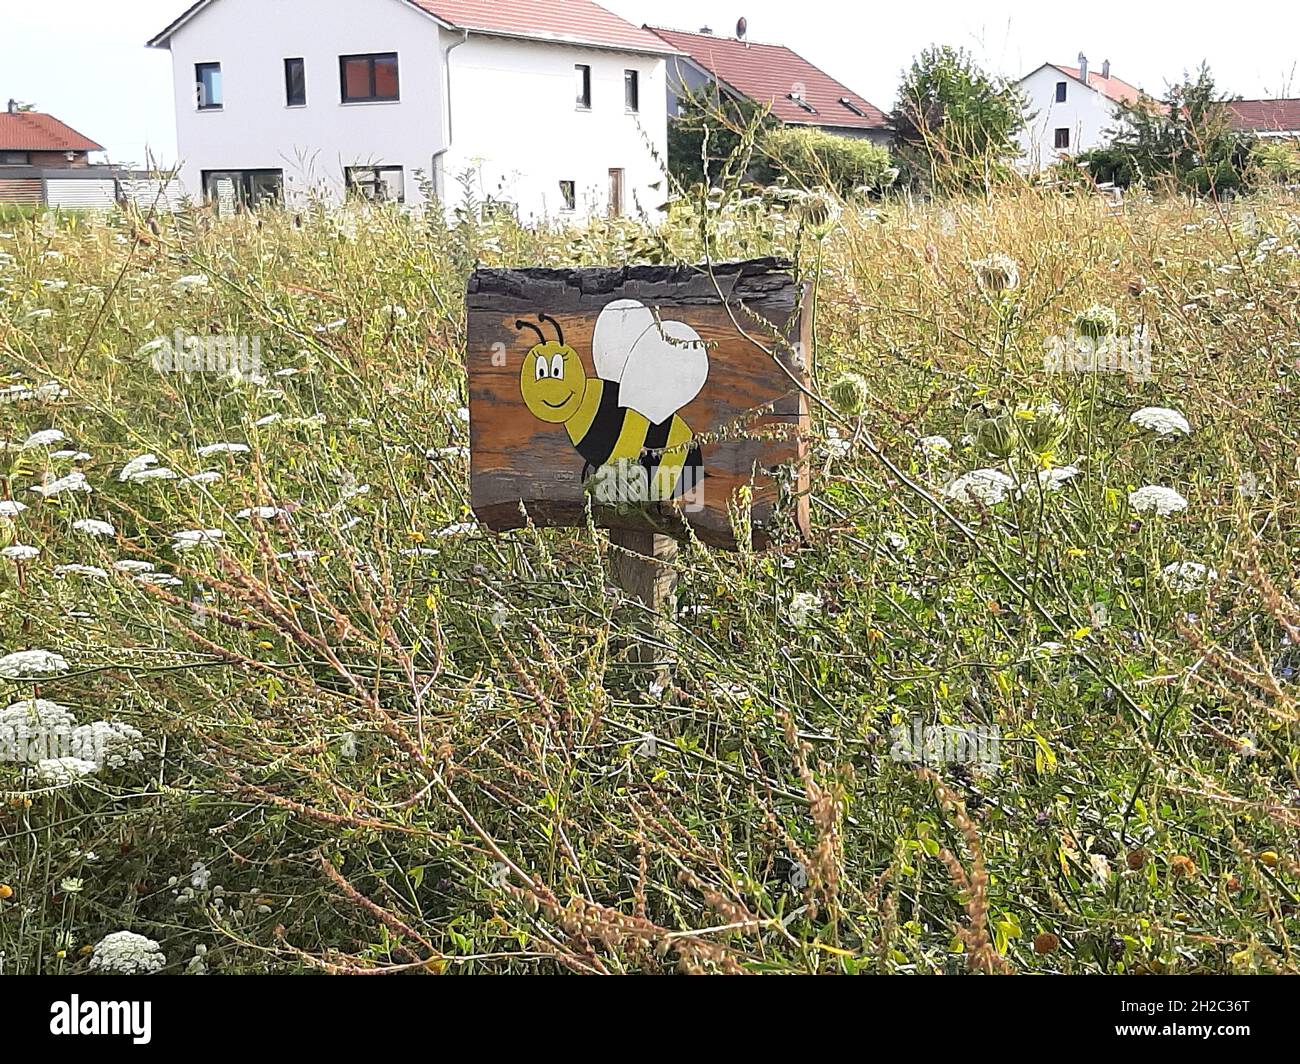 Signe pour le projet de conservation des abeilles sauvages dans un pré, Allemagne Banque D'Images